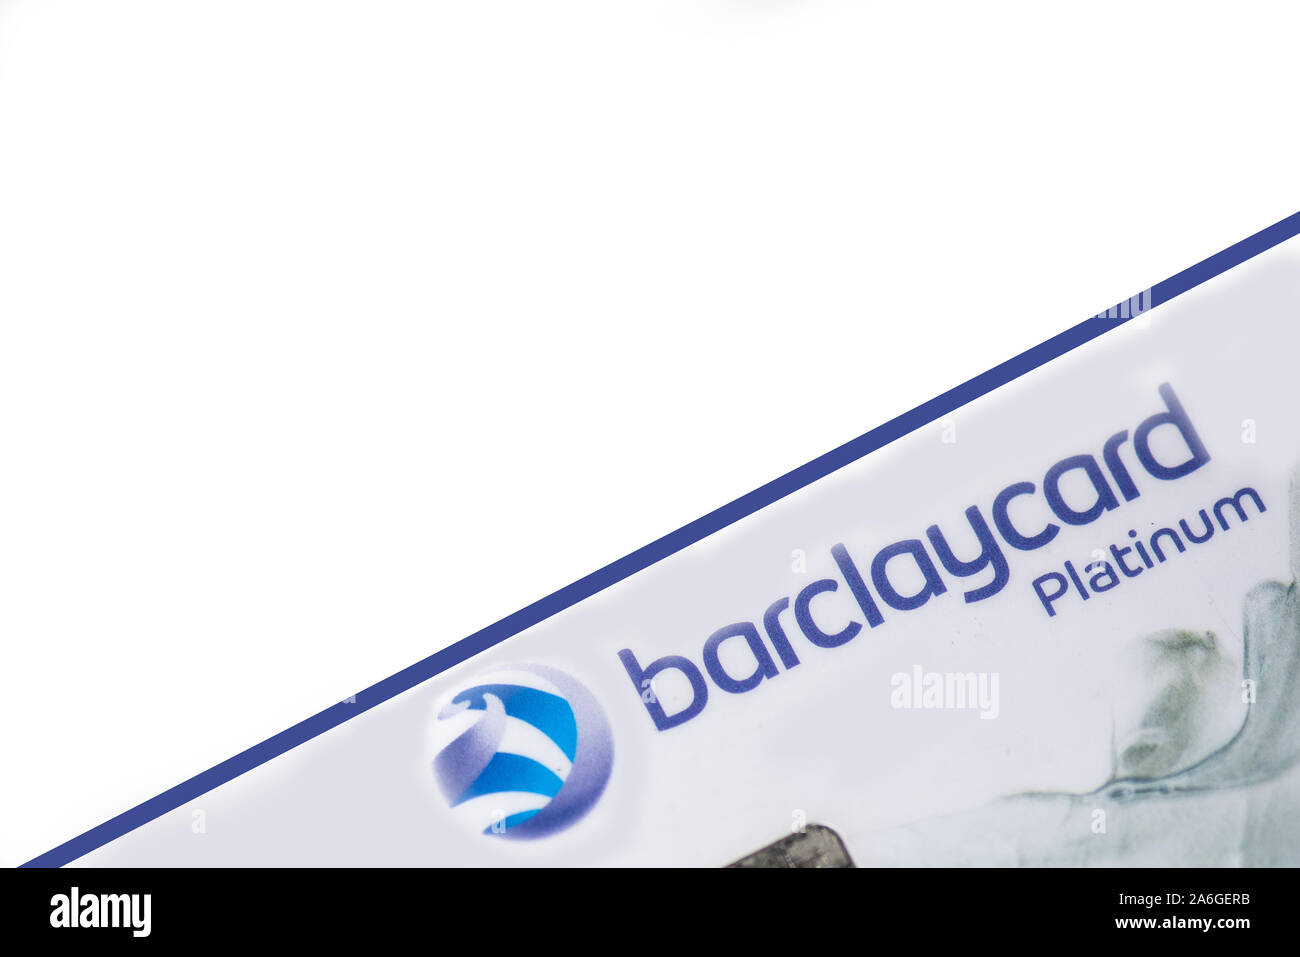 Barclaycard platinum credit card su uno sfondo bianco, Visa card, società senza contanti Foto Stock